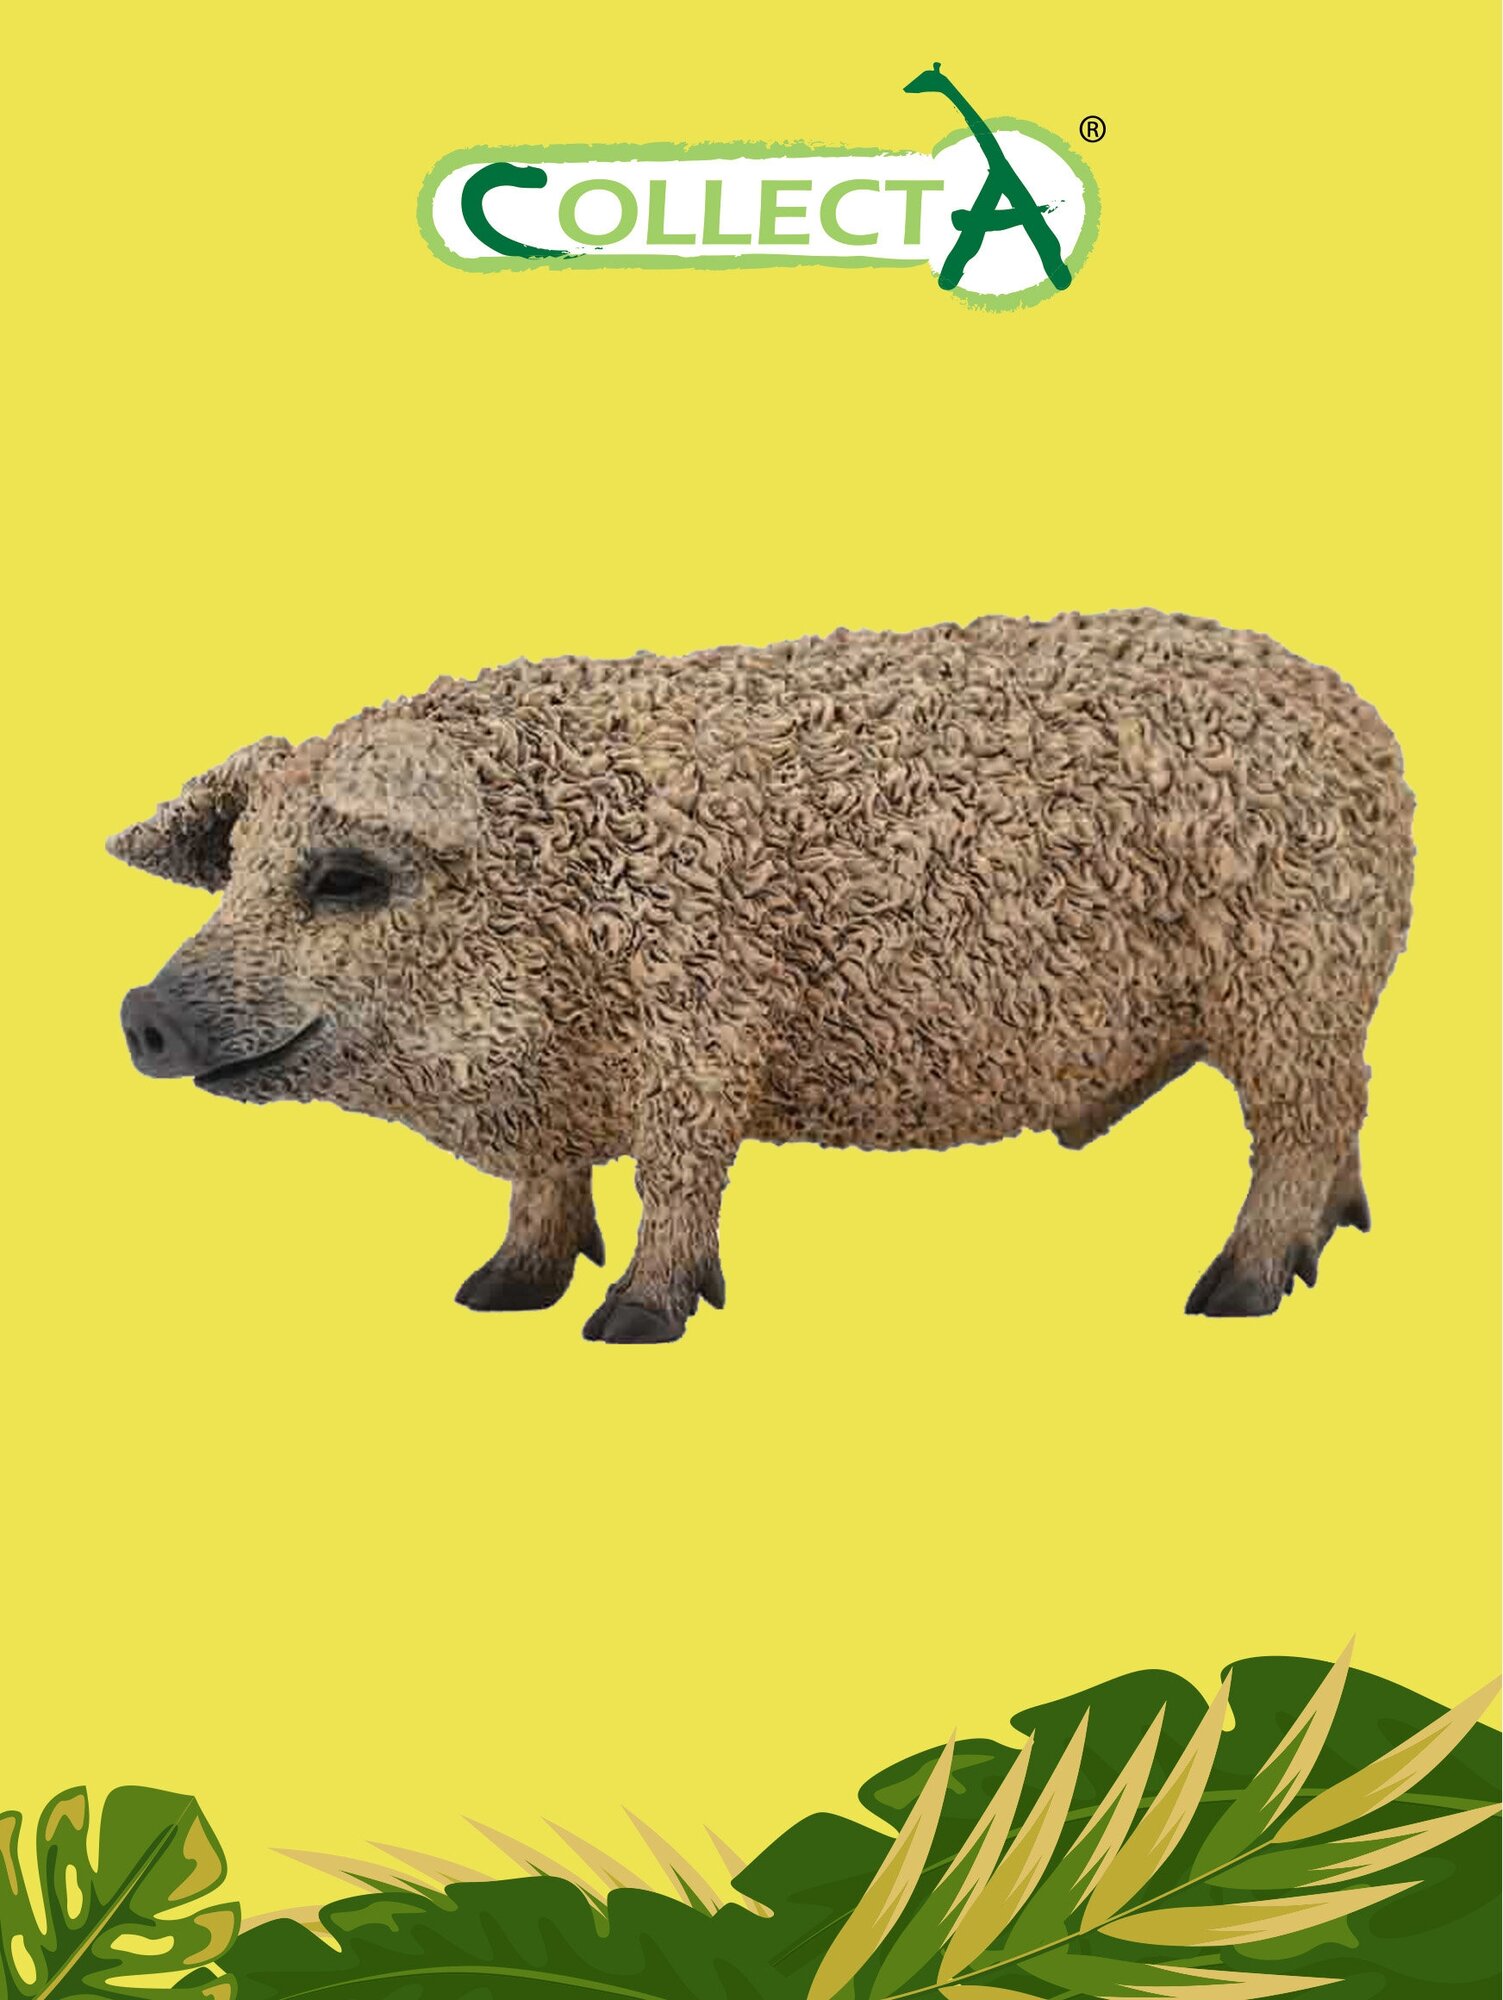 Фигурка животного Collecta, Венгерская свинка